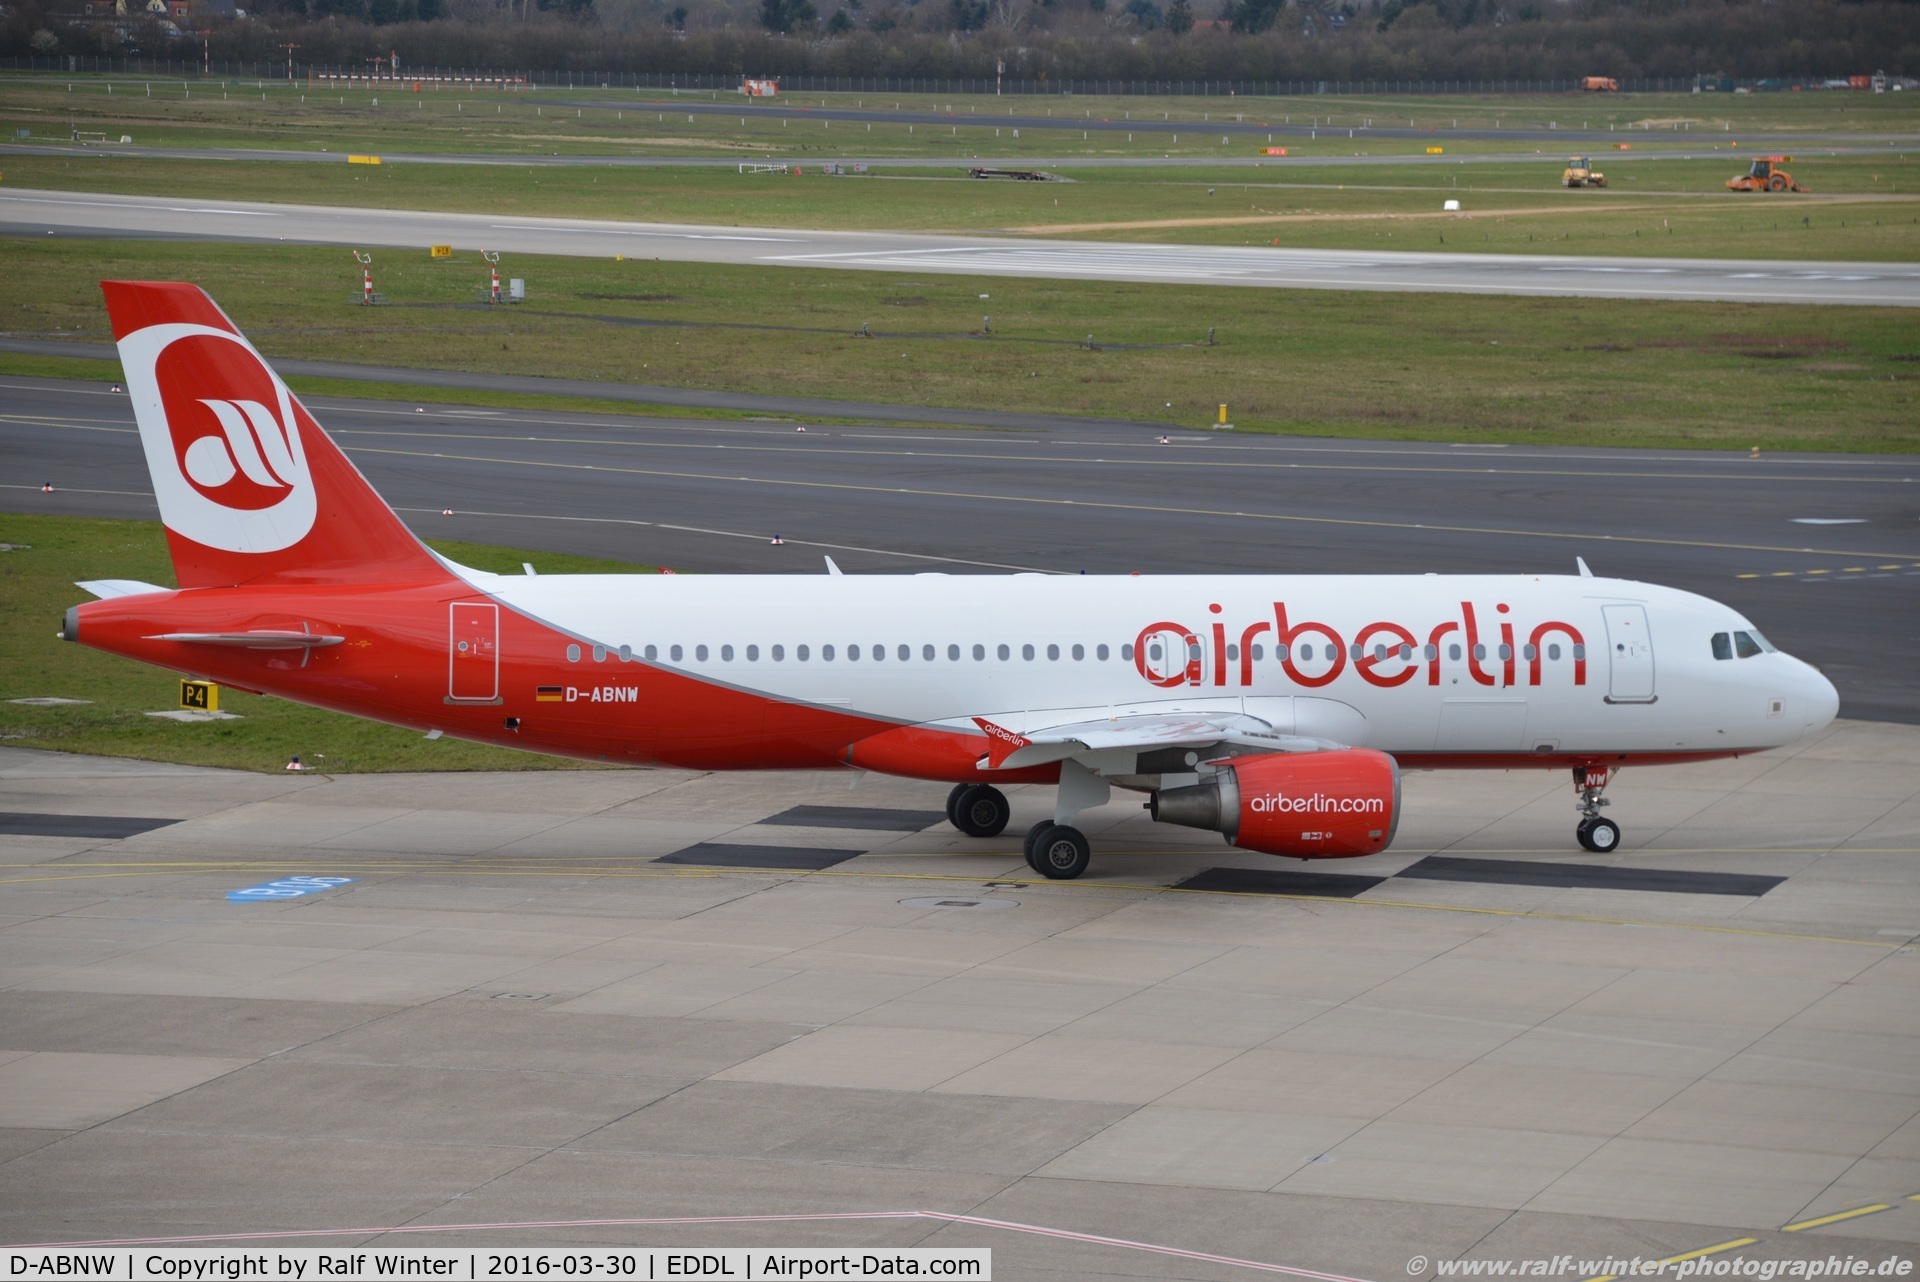 D-ABNW, 2005 Airbus A320-214 C/N 2627, Airbus A320-214 - AB BER Air Berlin - 2627 - D-ABNW - 30.03.2016 - DUS